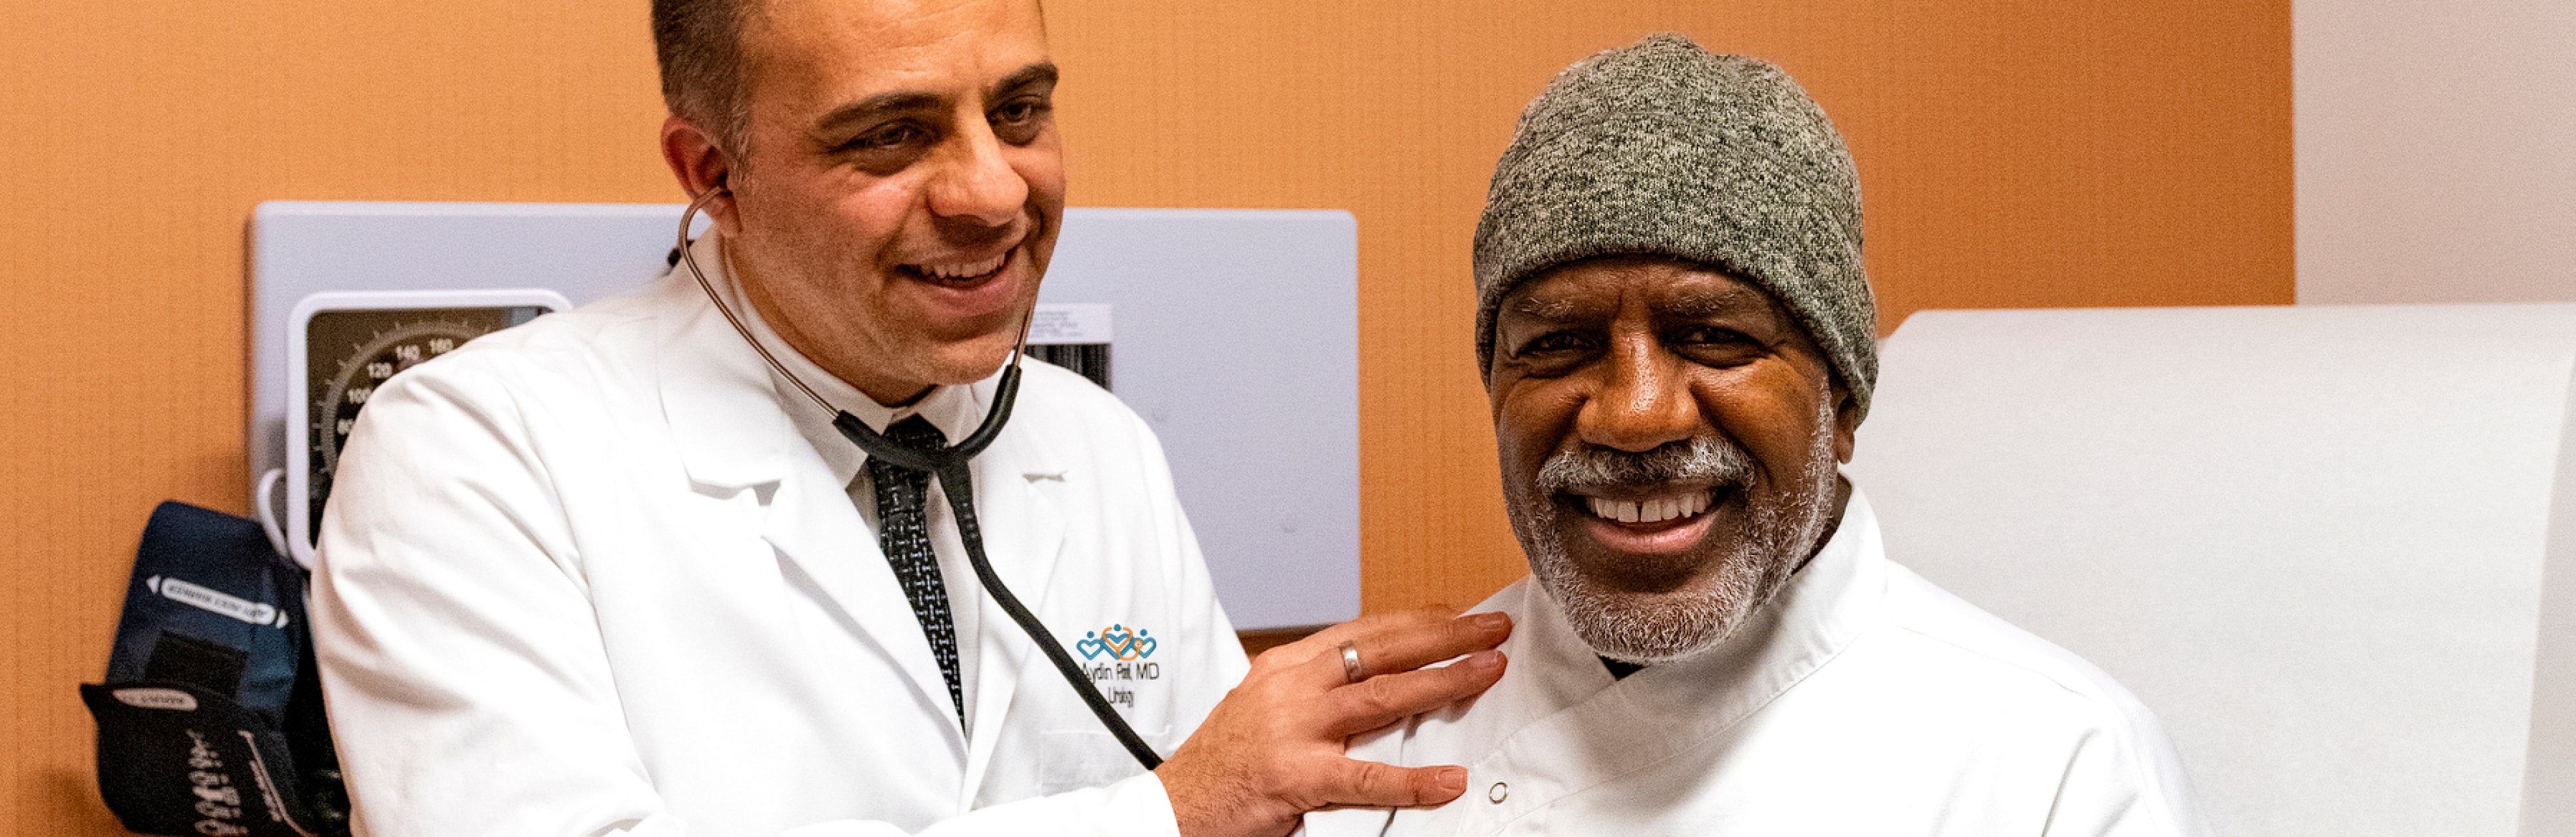 Un médico con un paciente afroamericano